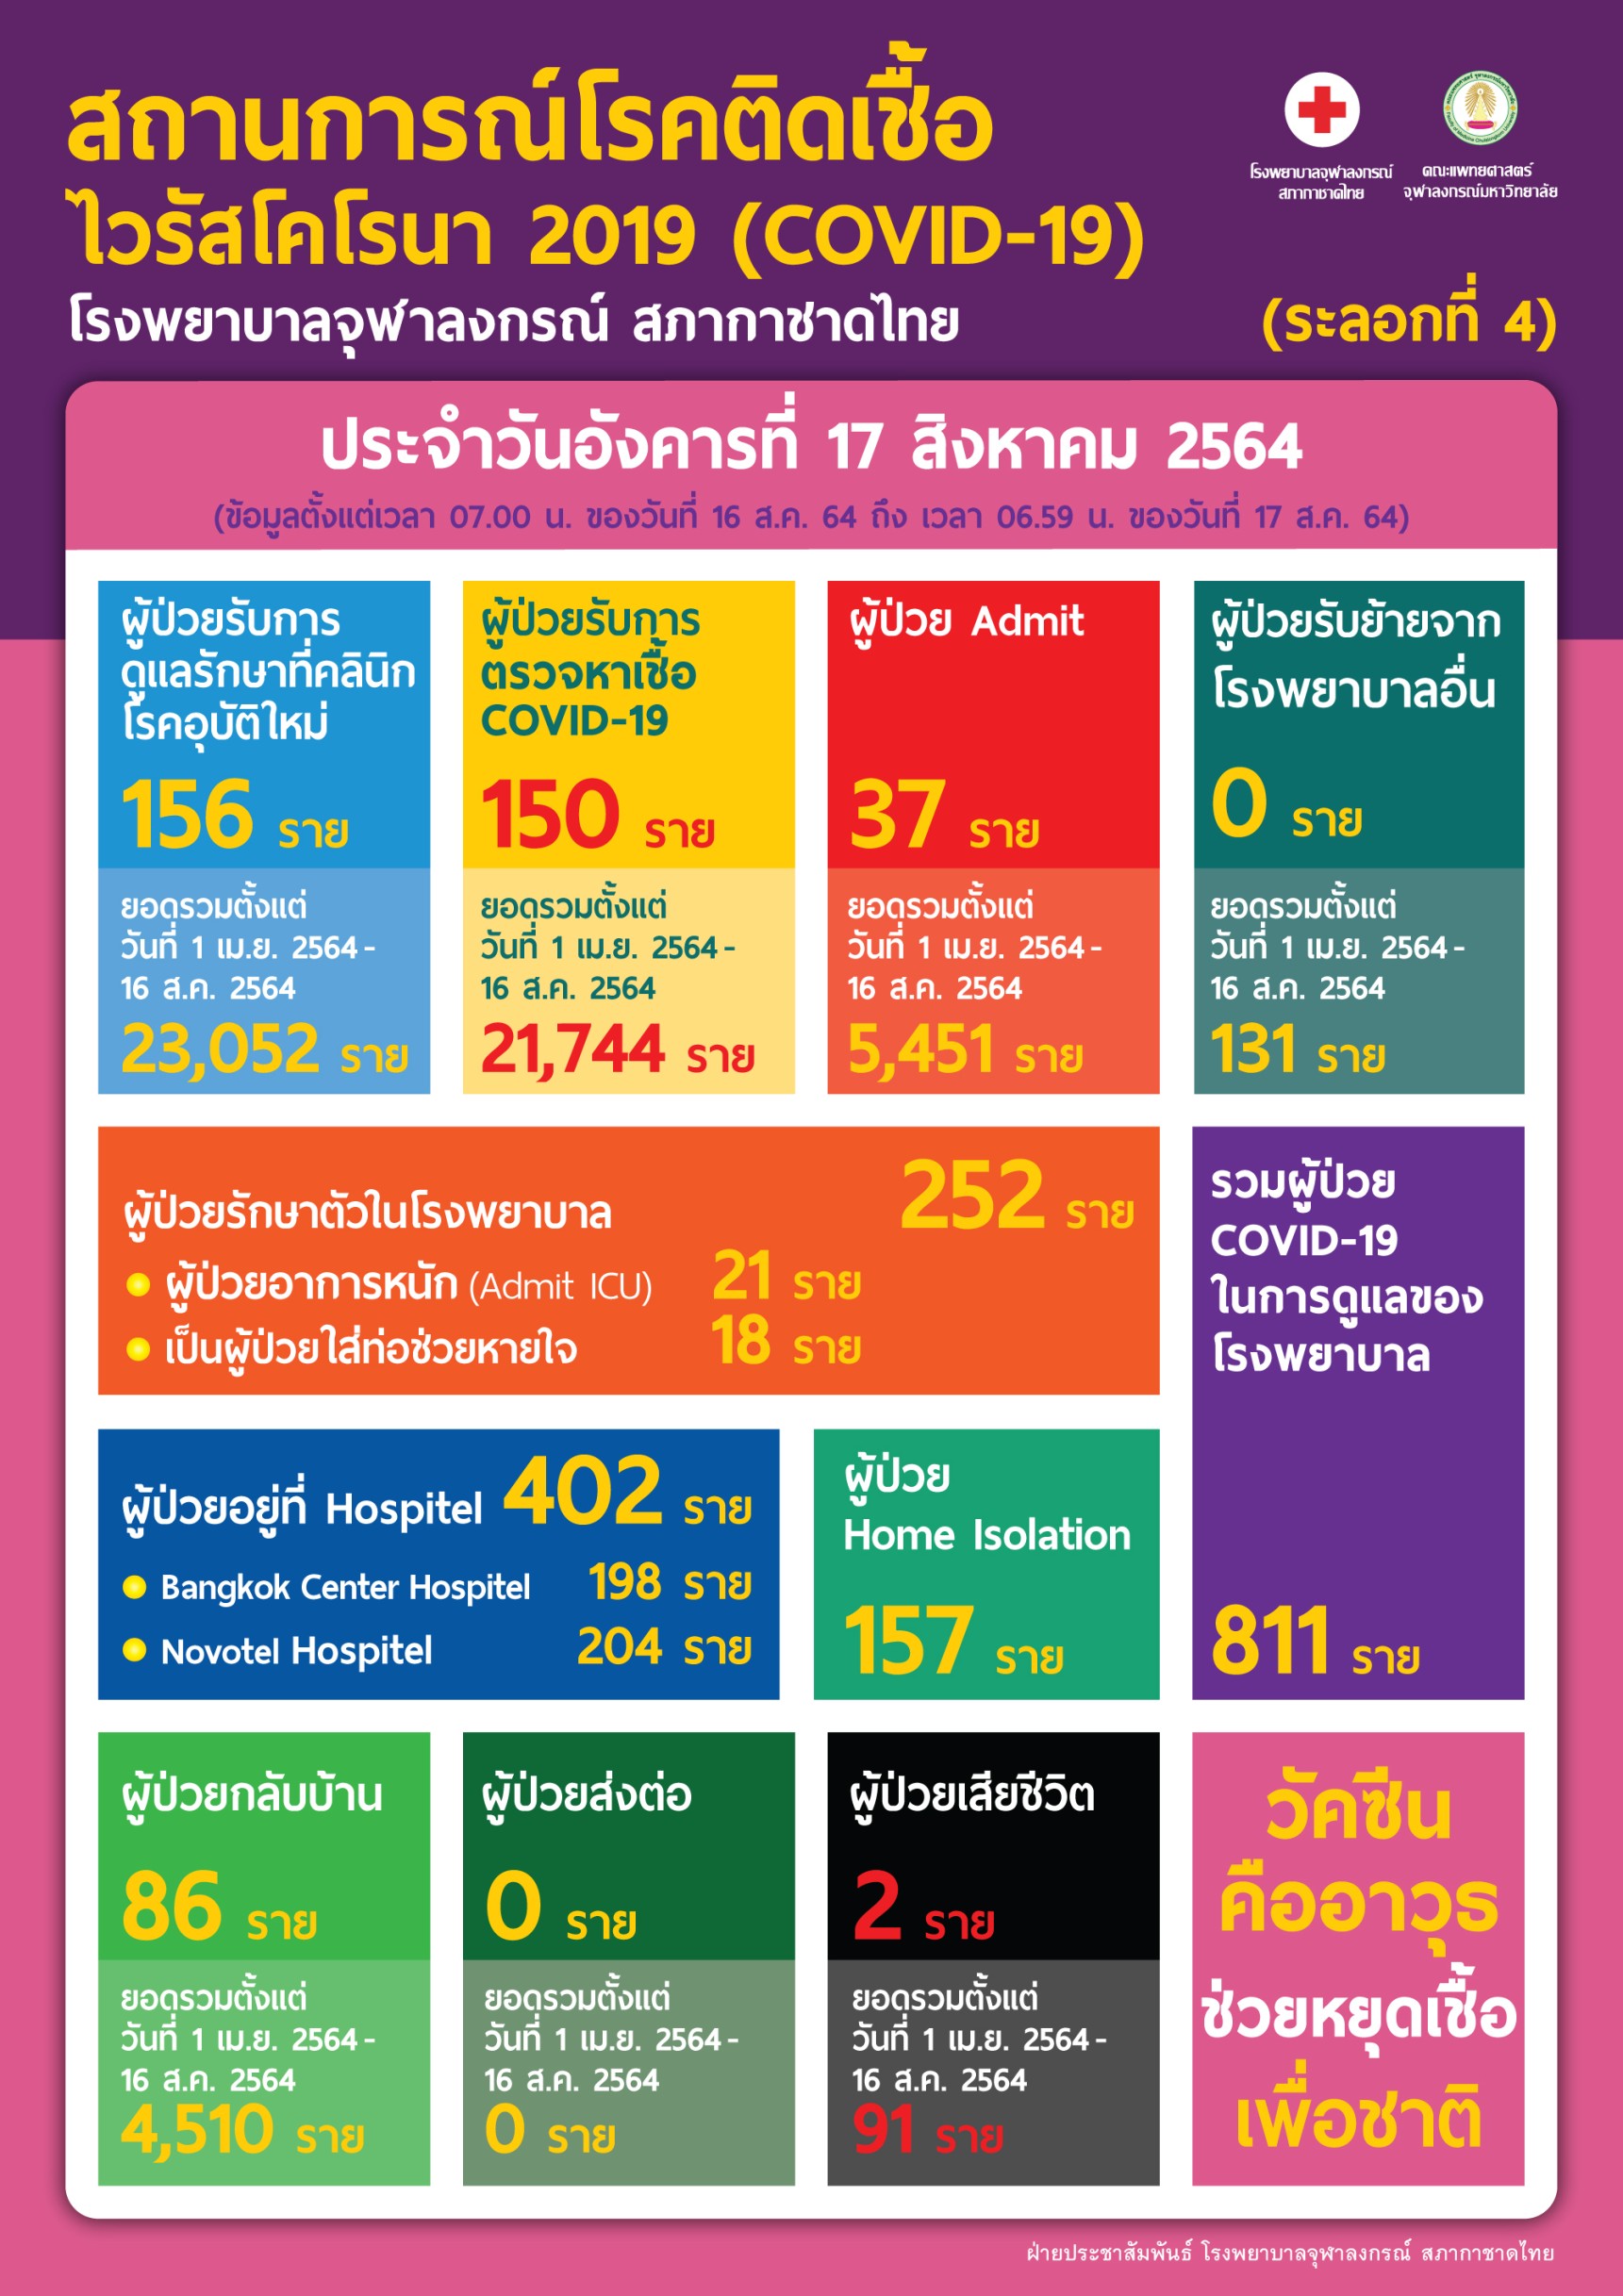 สถานการณ์โรคติดเชื้อาลงกรณ์ไวรัสโคโรนา 2019 (COVID-19) (ระลอกที่ 4) โรงพยาบาลจุฬาลงกรณ์ สภากาชาดไทย ประจำวันอังคารที่ 17 สิงหาคม 2564